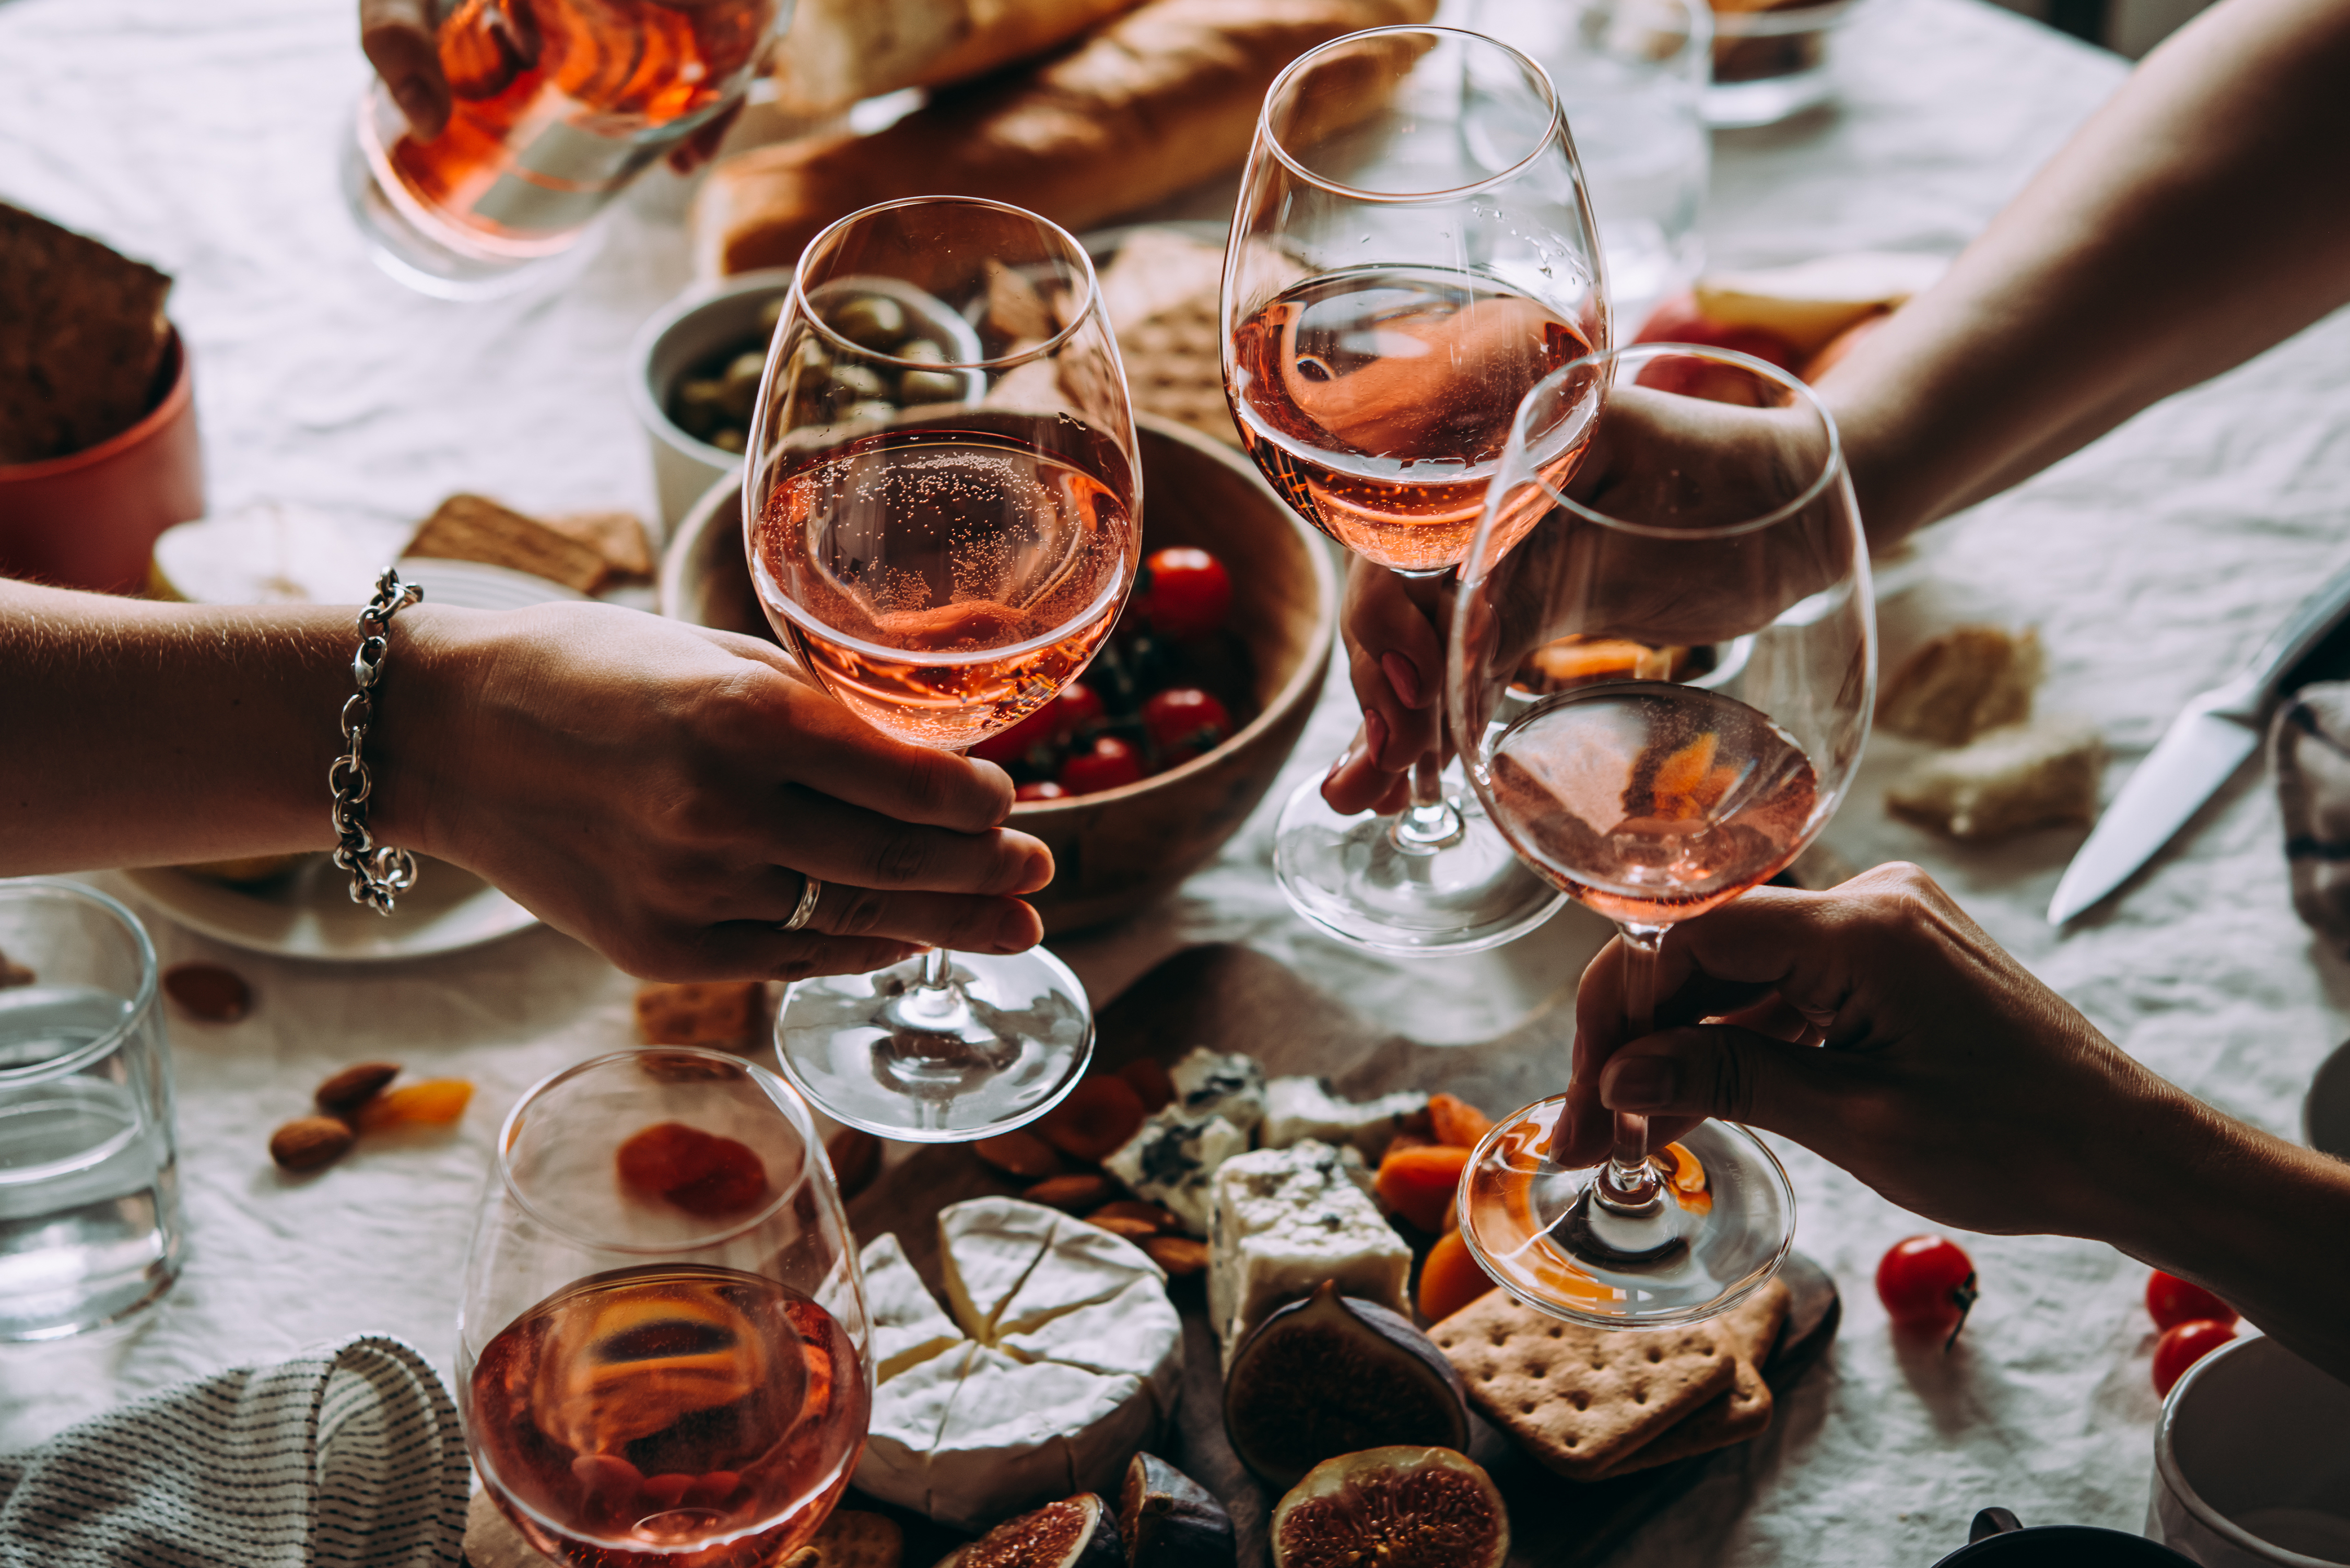 Menschen halten Weingläser während einer Party | Quelle: Shutterstock